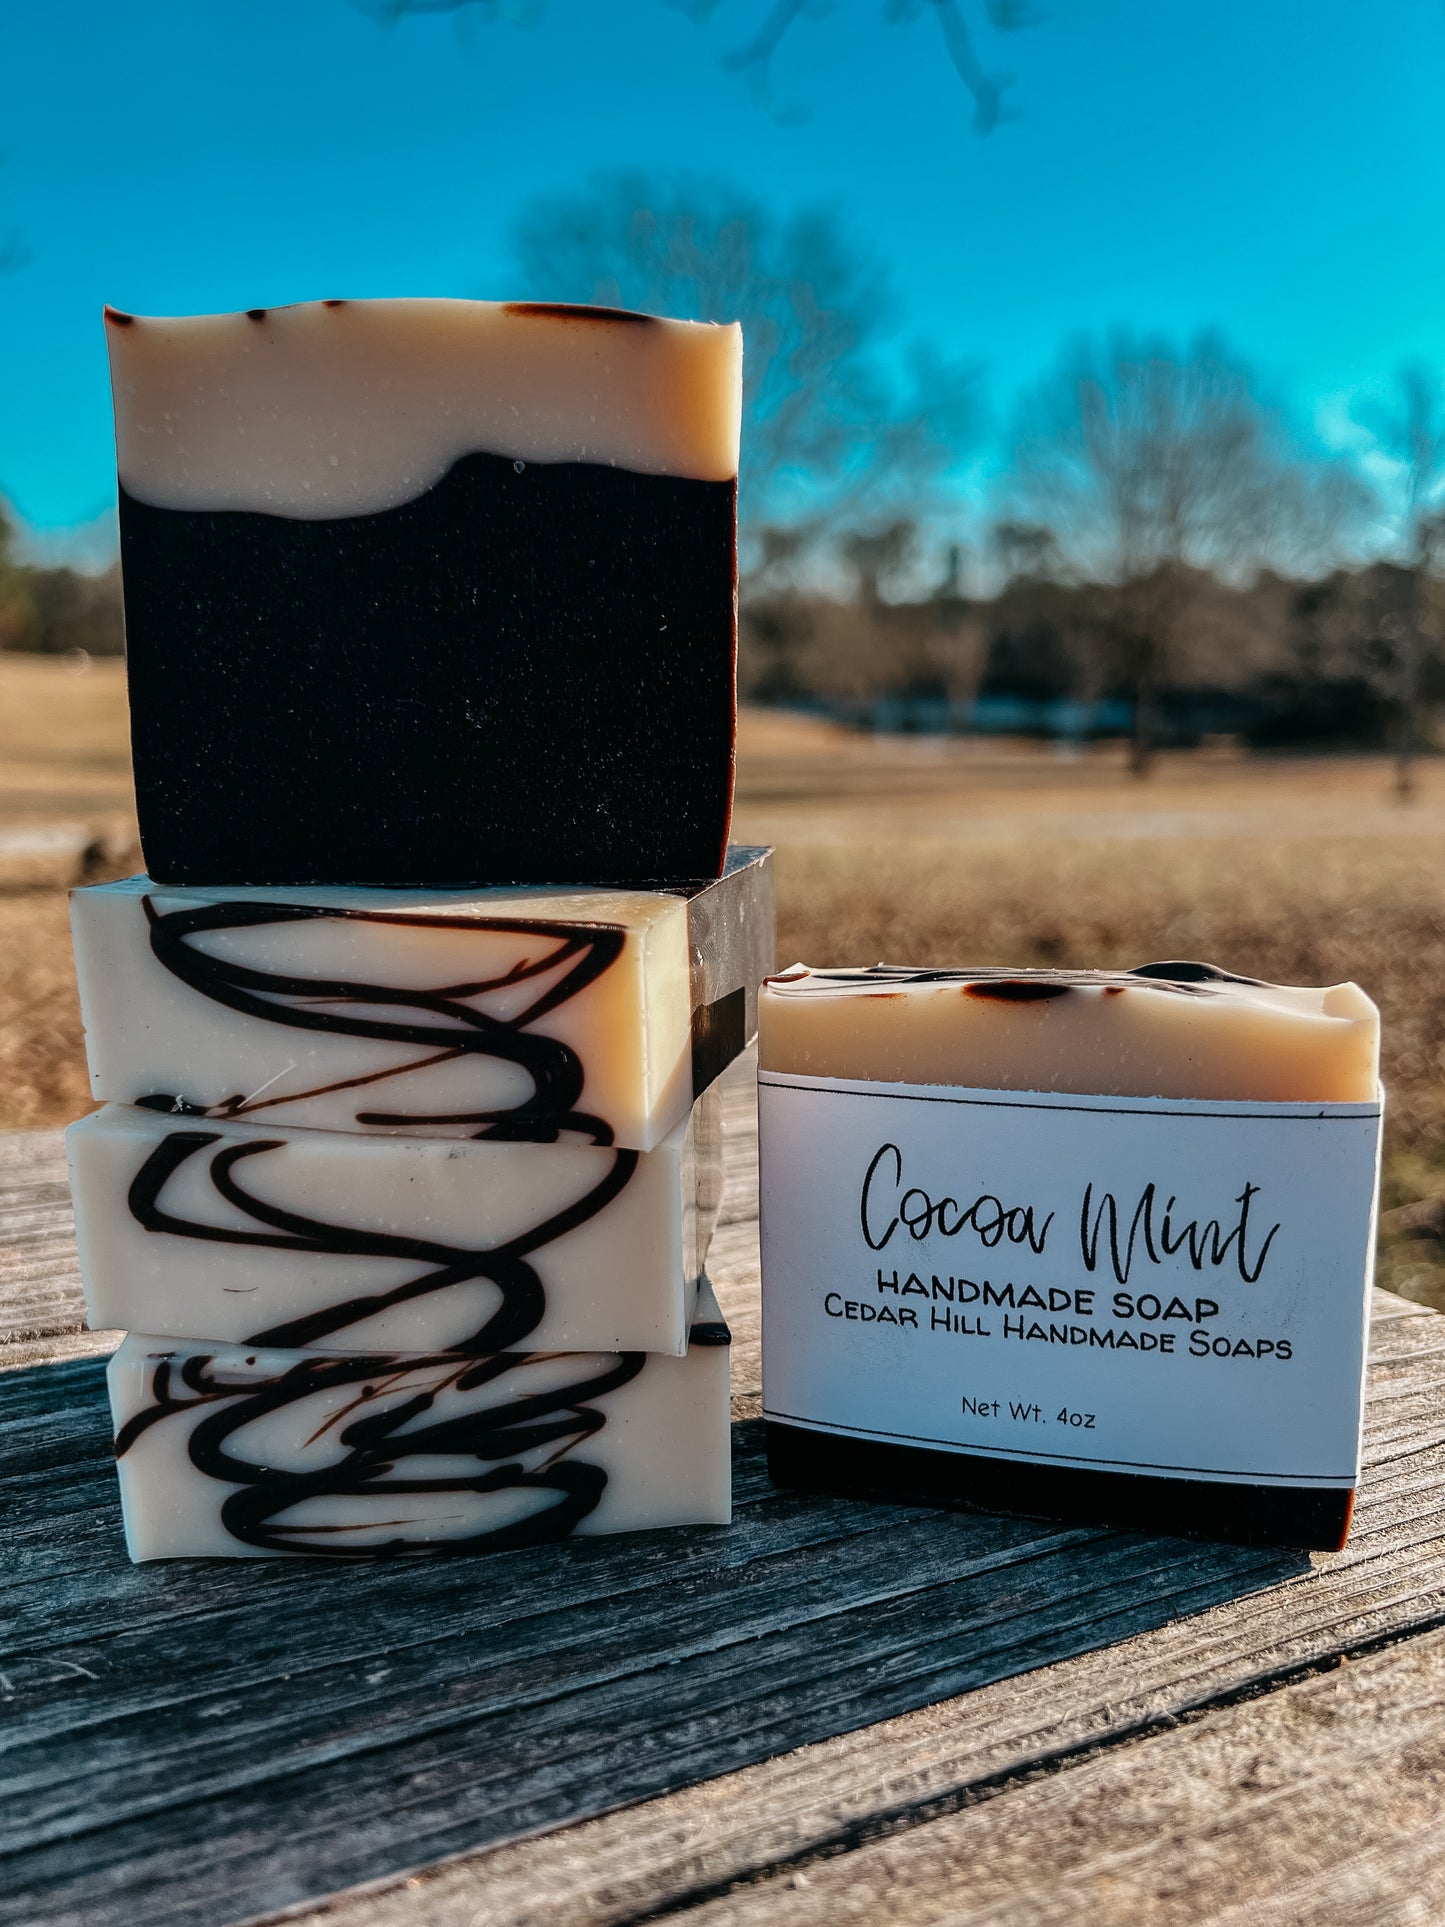 Cocoa Mint Handmade Soap